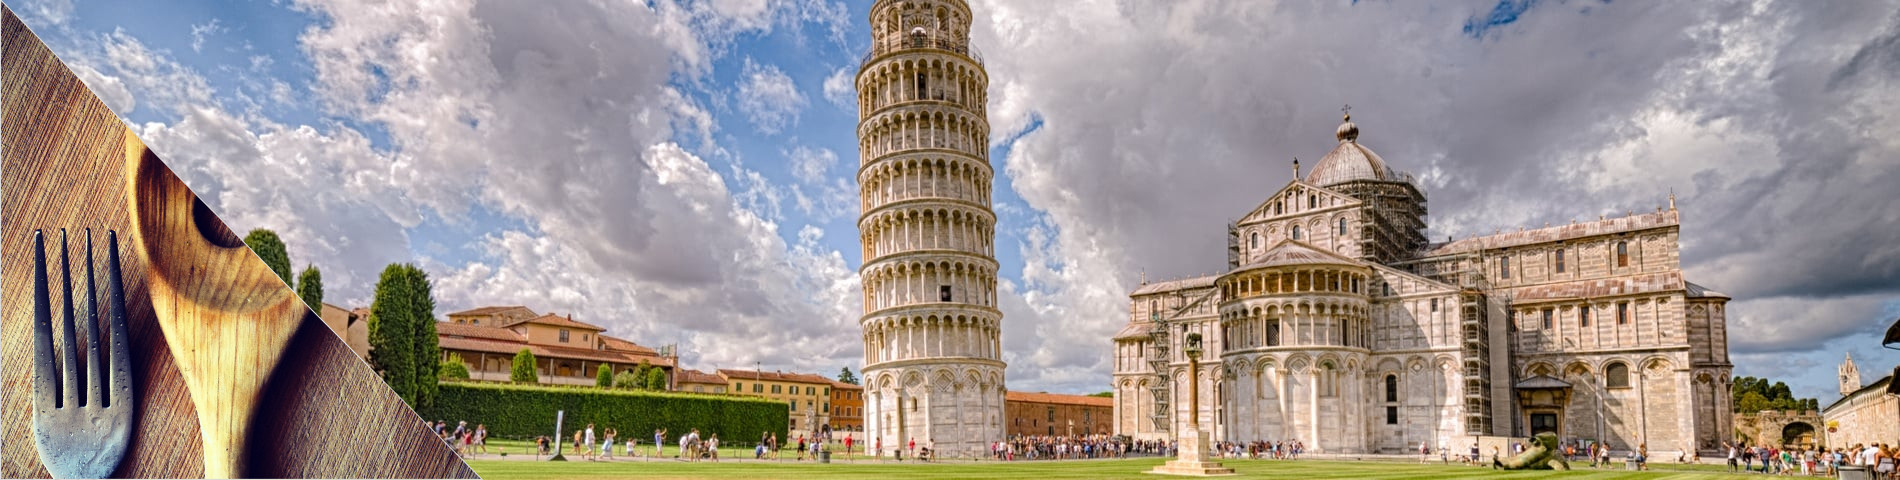 Pisa - Italia & ruoanlaitto